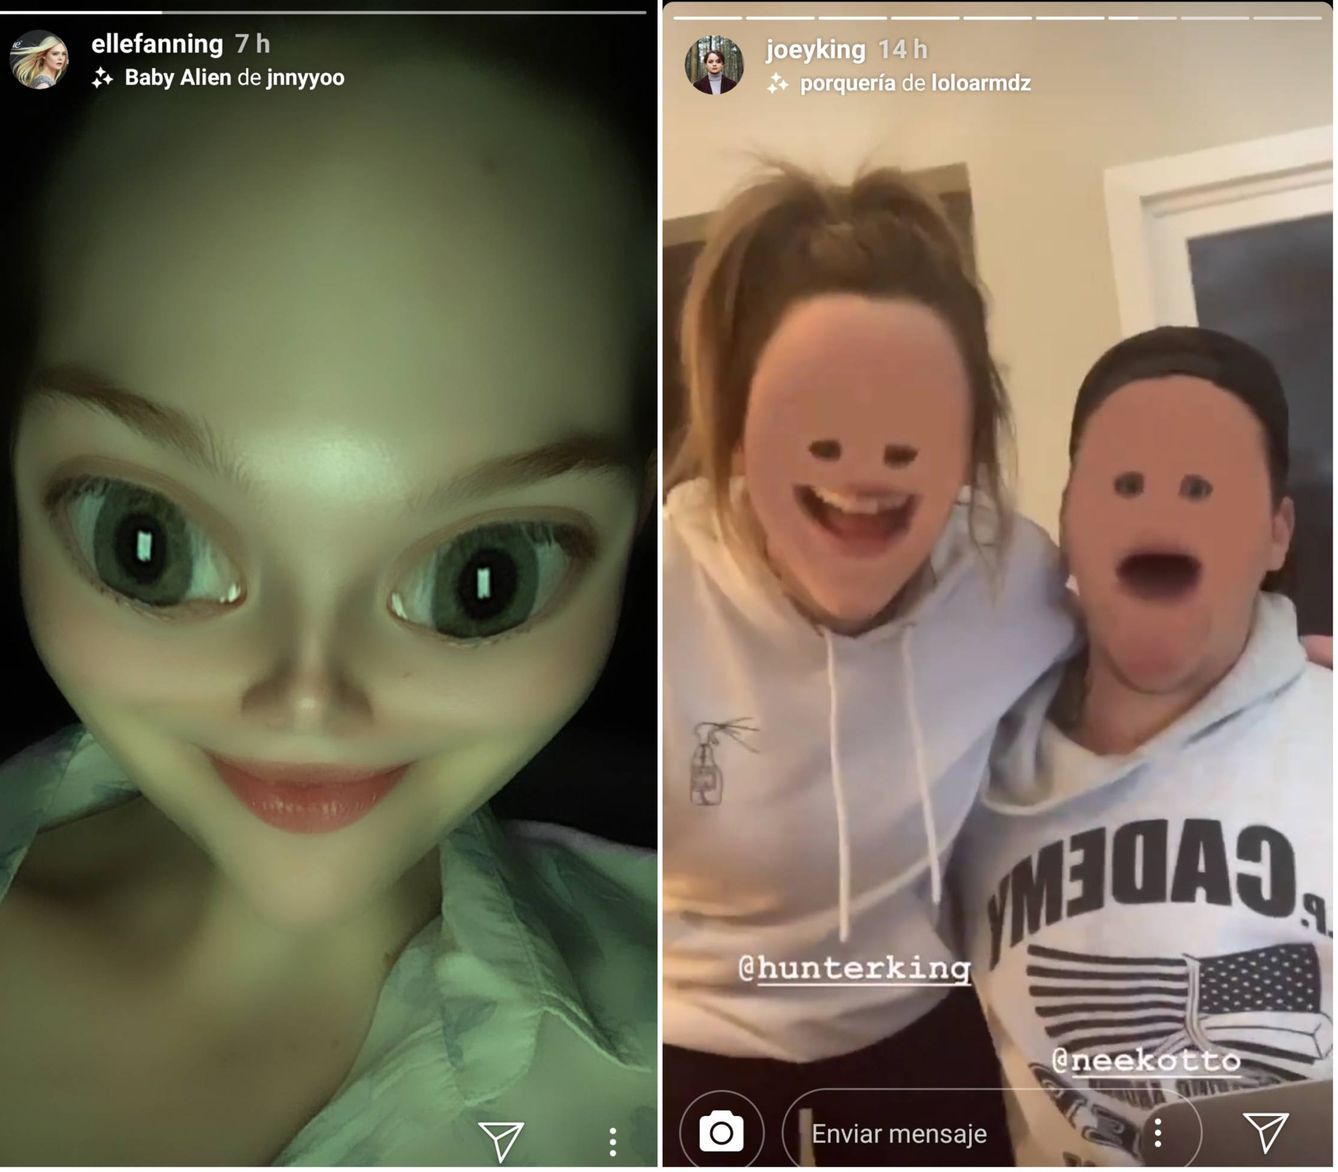 Dos filtros de Instagram con los que te conviertes en un bebé alienígena o en una criatura deforme 